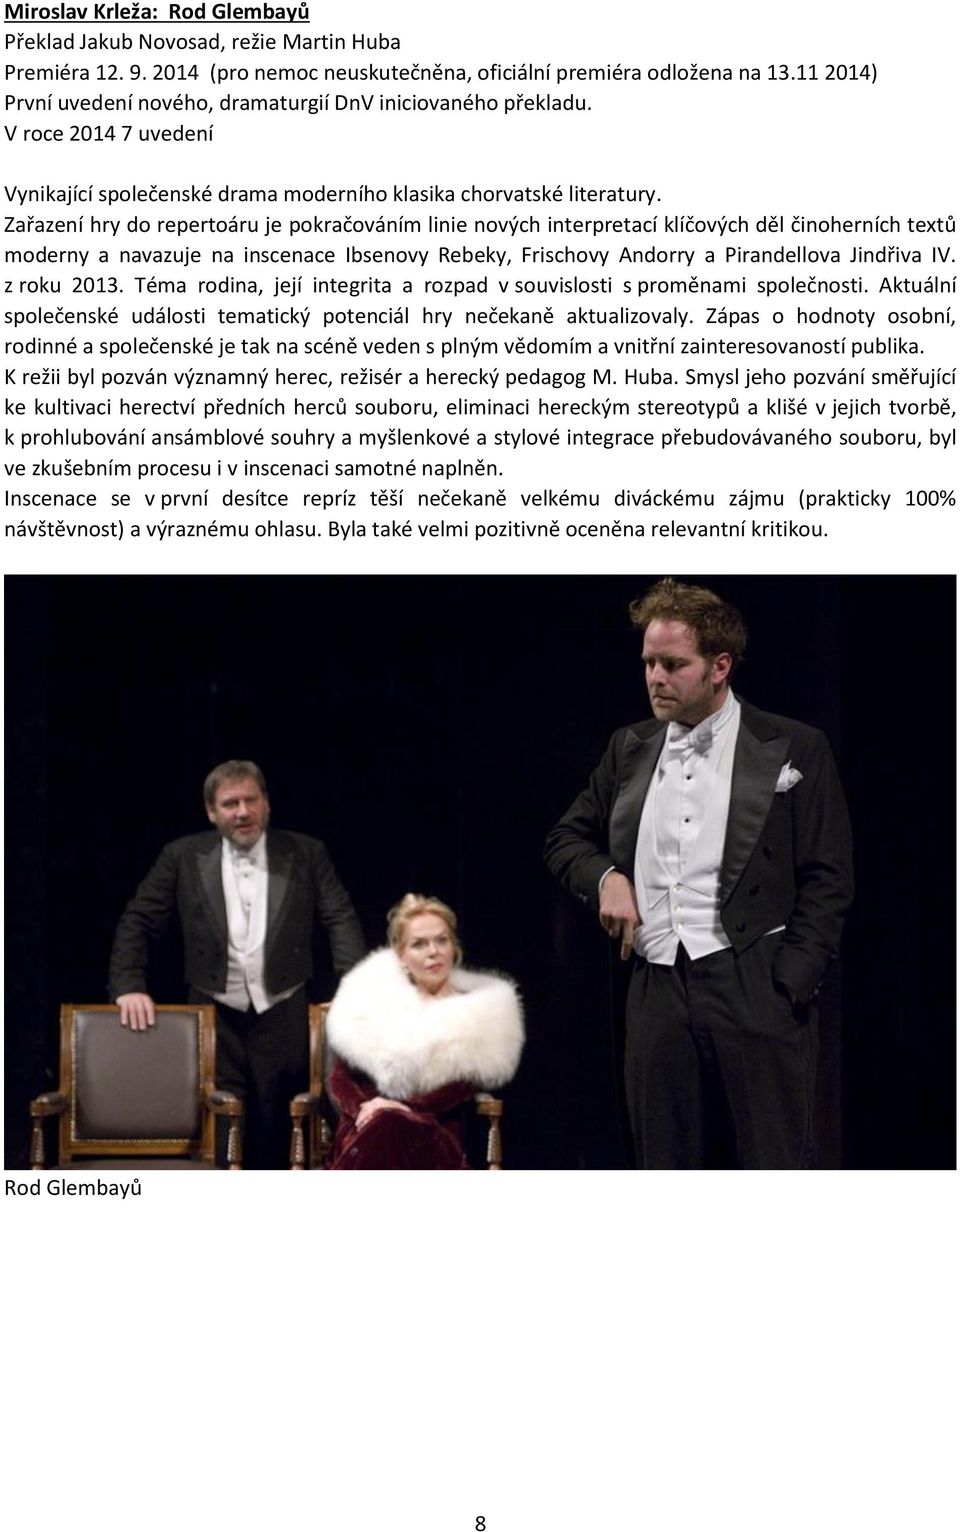 Zařazení hry do repertoáru je pokračováním linie nových interpretací klíčových děl činoherních textů moderny a navazuje na inscenace Ibsenovy Rebeky, Frischovy Andorry a Pirandellova Jindřiva IV.